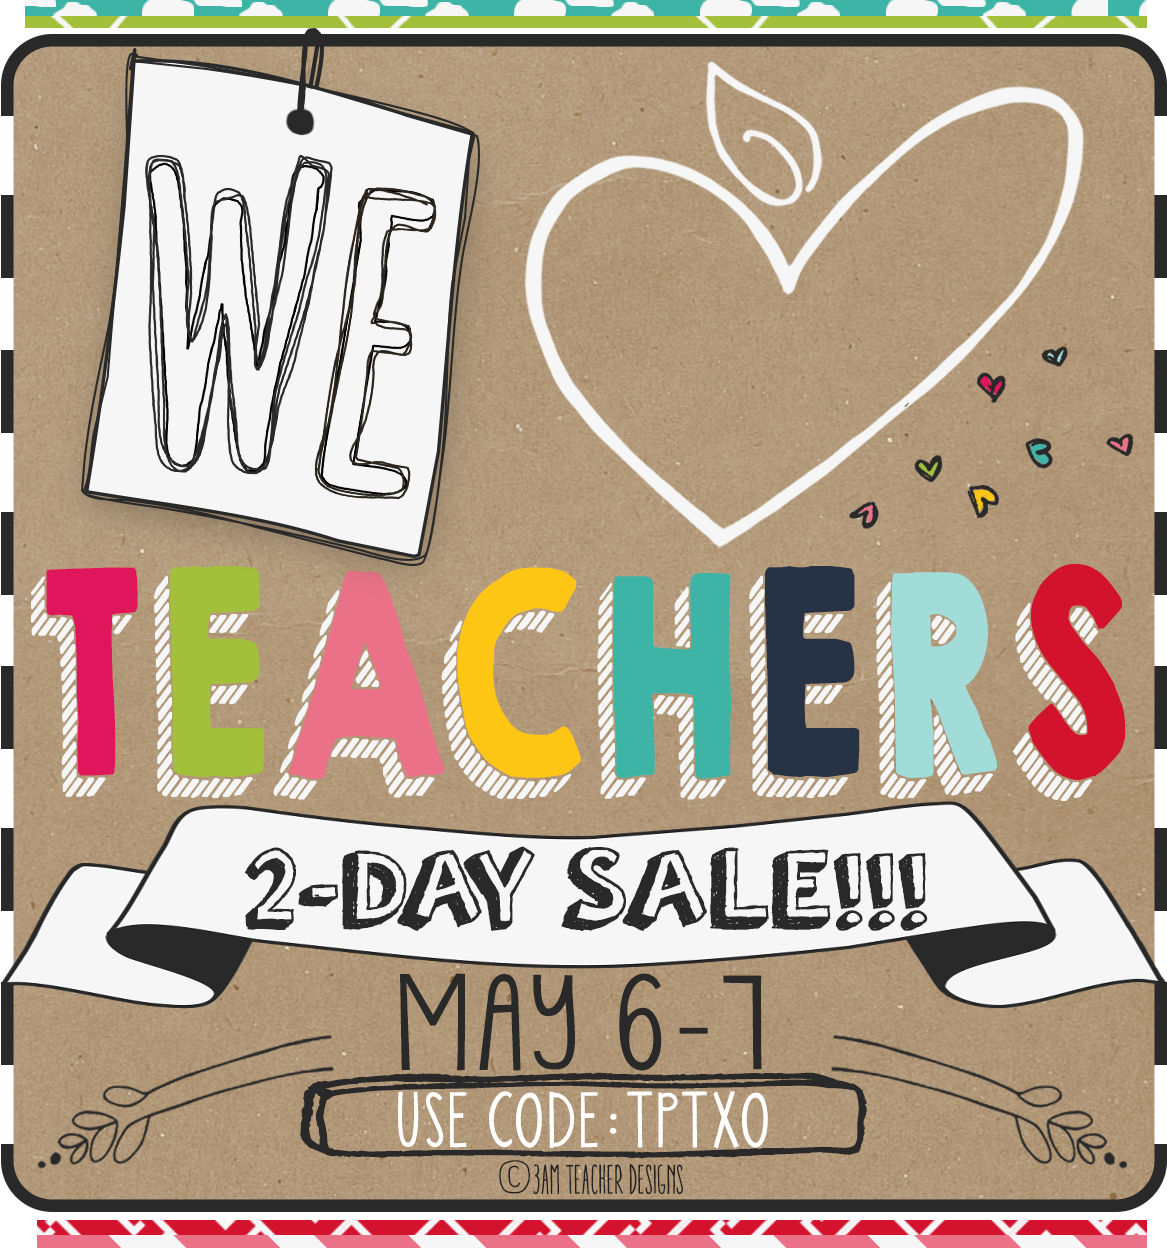 http://www.teacherspayteachers.com/Store/Fern-Smiths-Classroom-Ideas